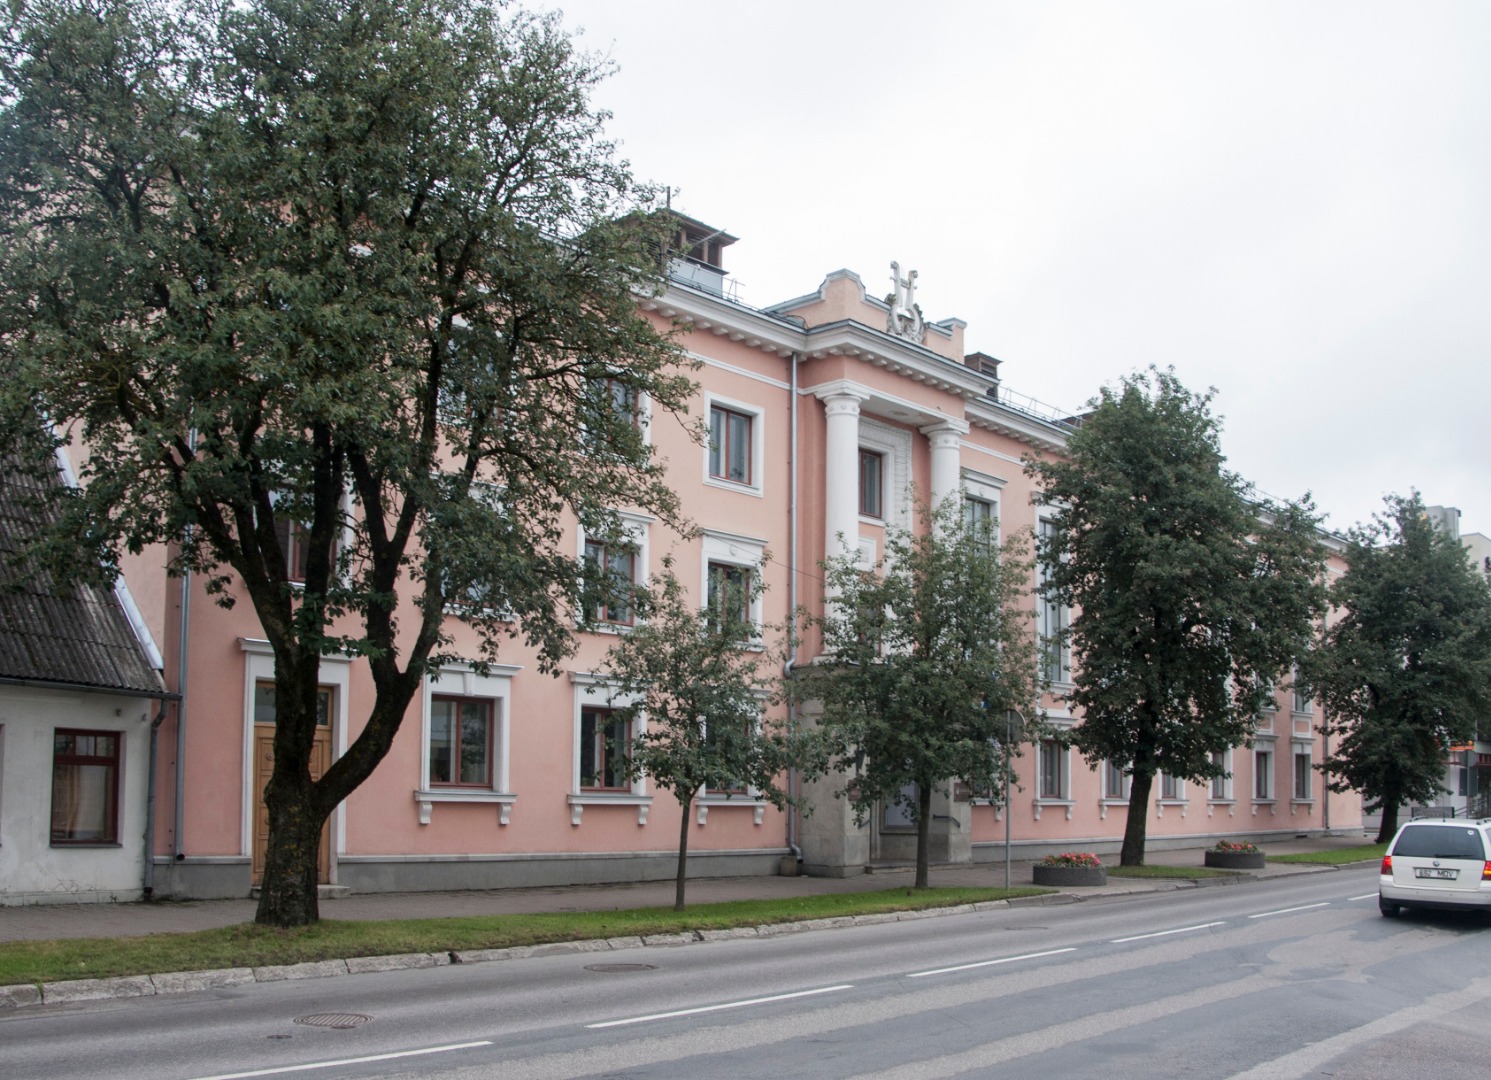 Viljandi concert hall "Sakala" rephoto